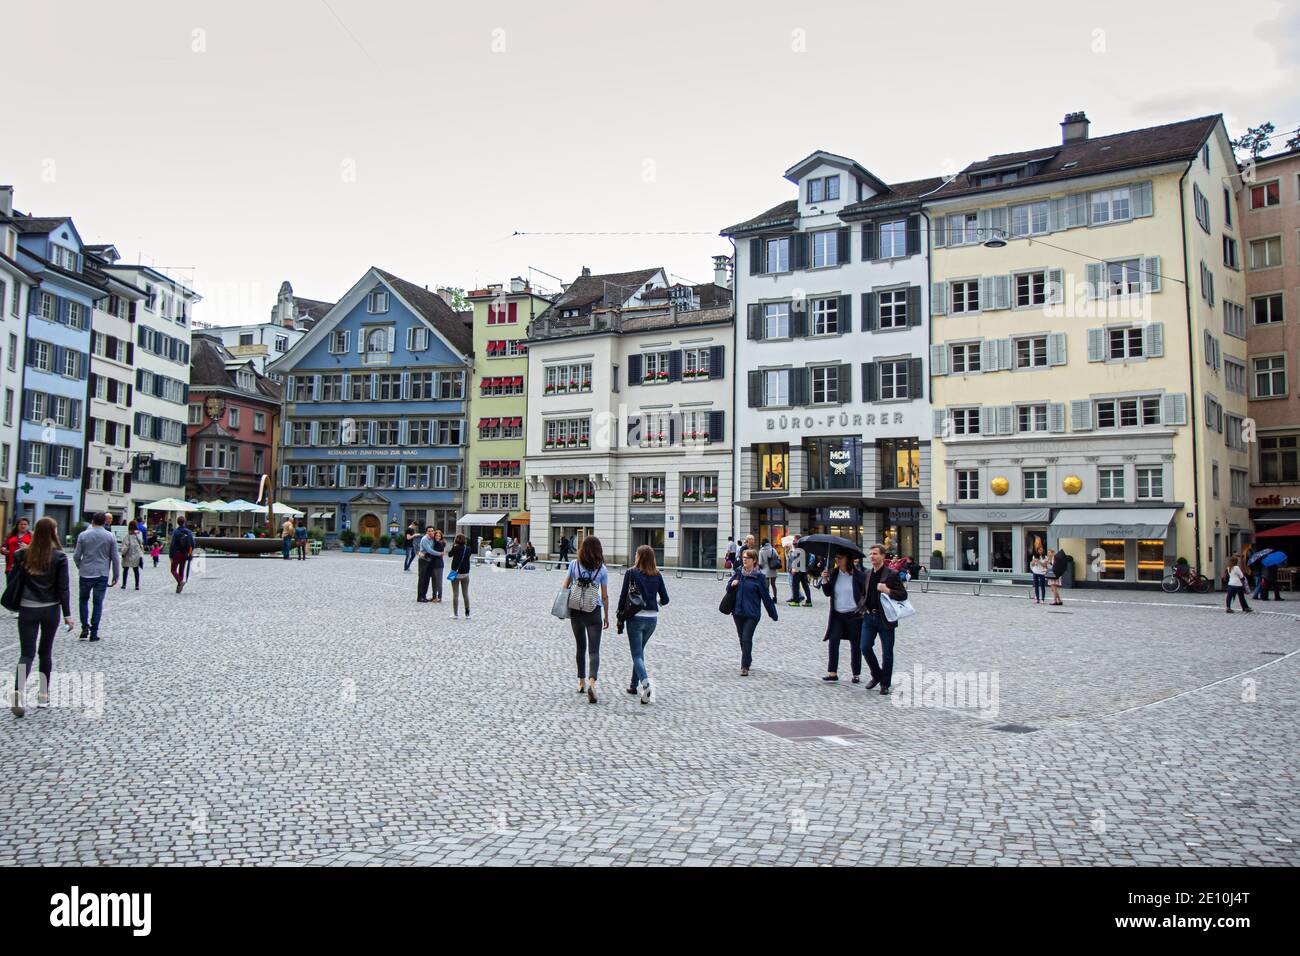 Zurigo, Svizzera - Giugno 4,2016: Munsterhof è una piazza cittadina situata nel quartiere Lindenhof, nel centro storico di Zurigo, in Svizzera Foto Stock